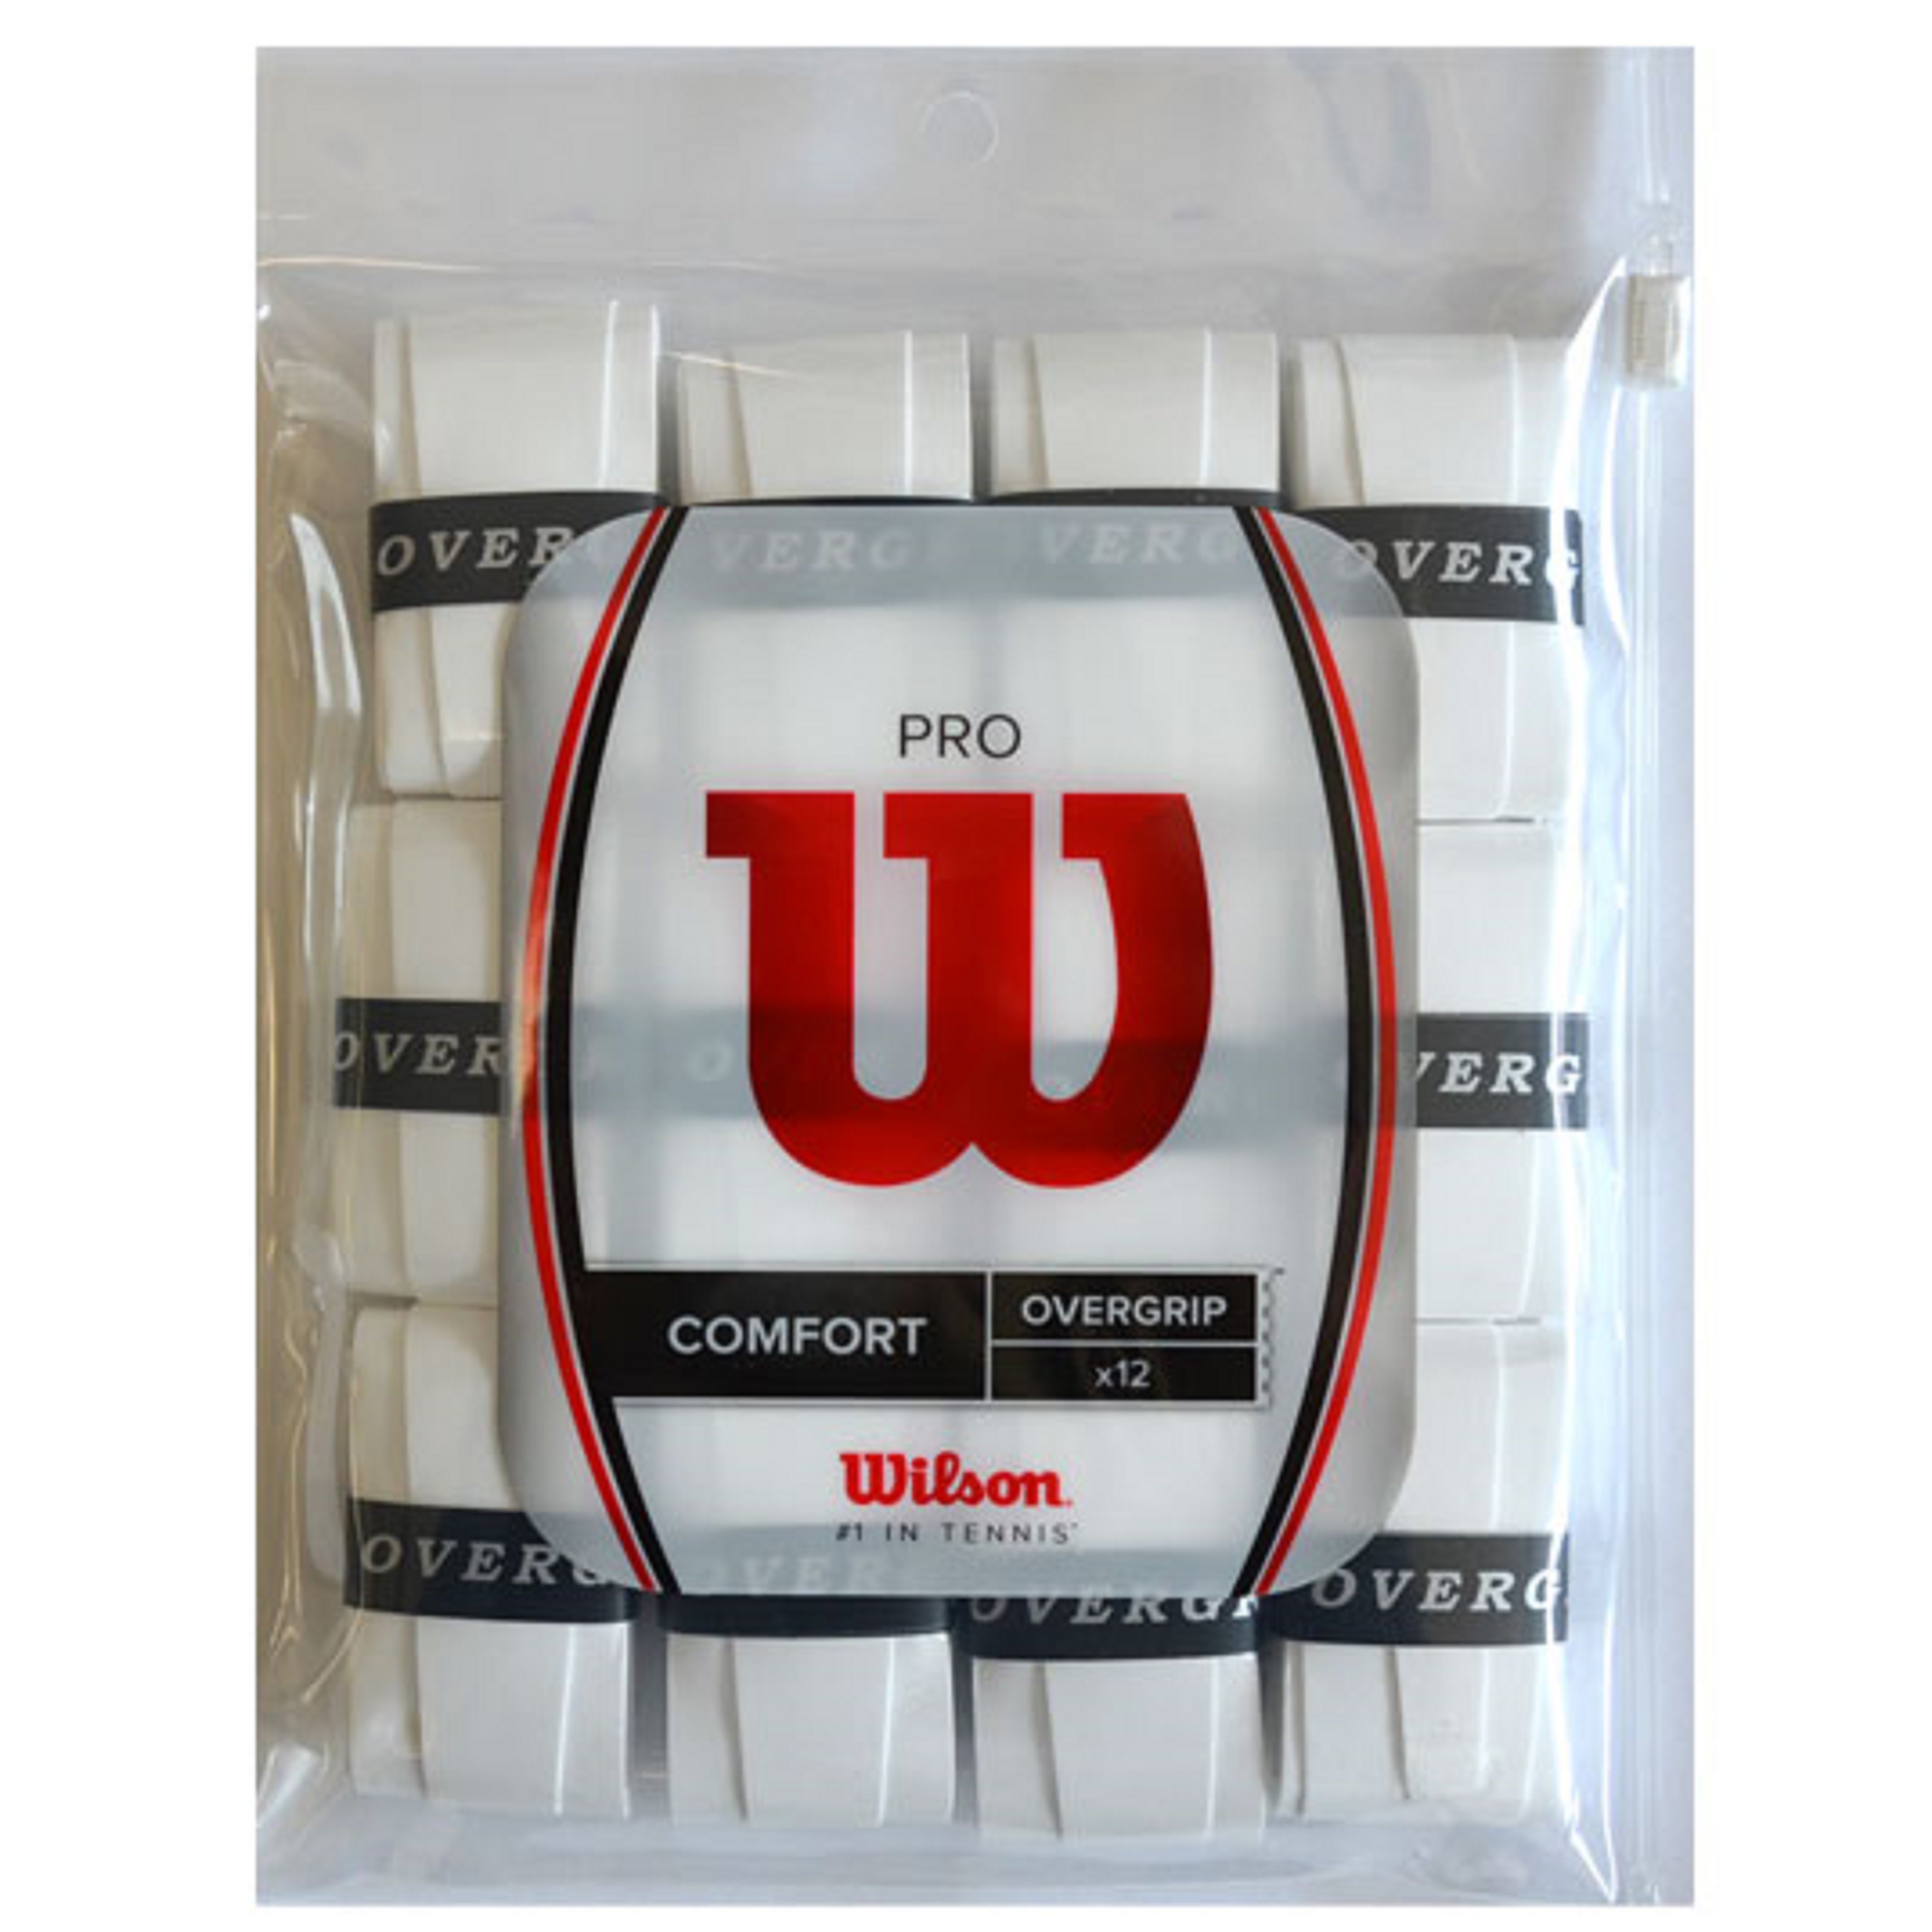 2021年春の ウイルソン プロ オーバーグリップ プレイヤーパック 10本入り 白 Wilson Pro OverGrip Player Pack  10pk